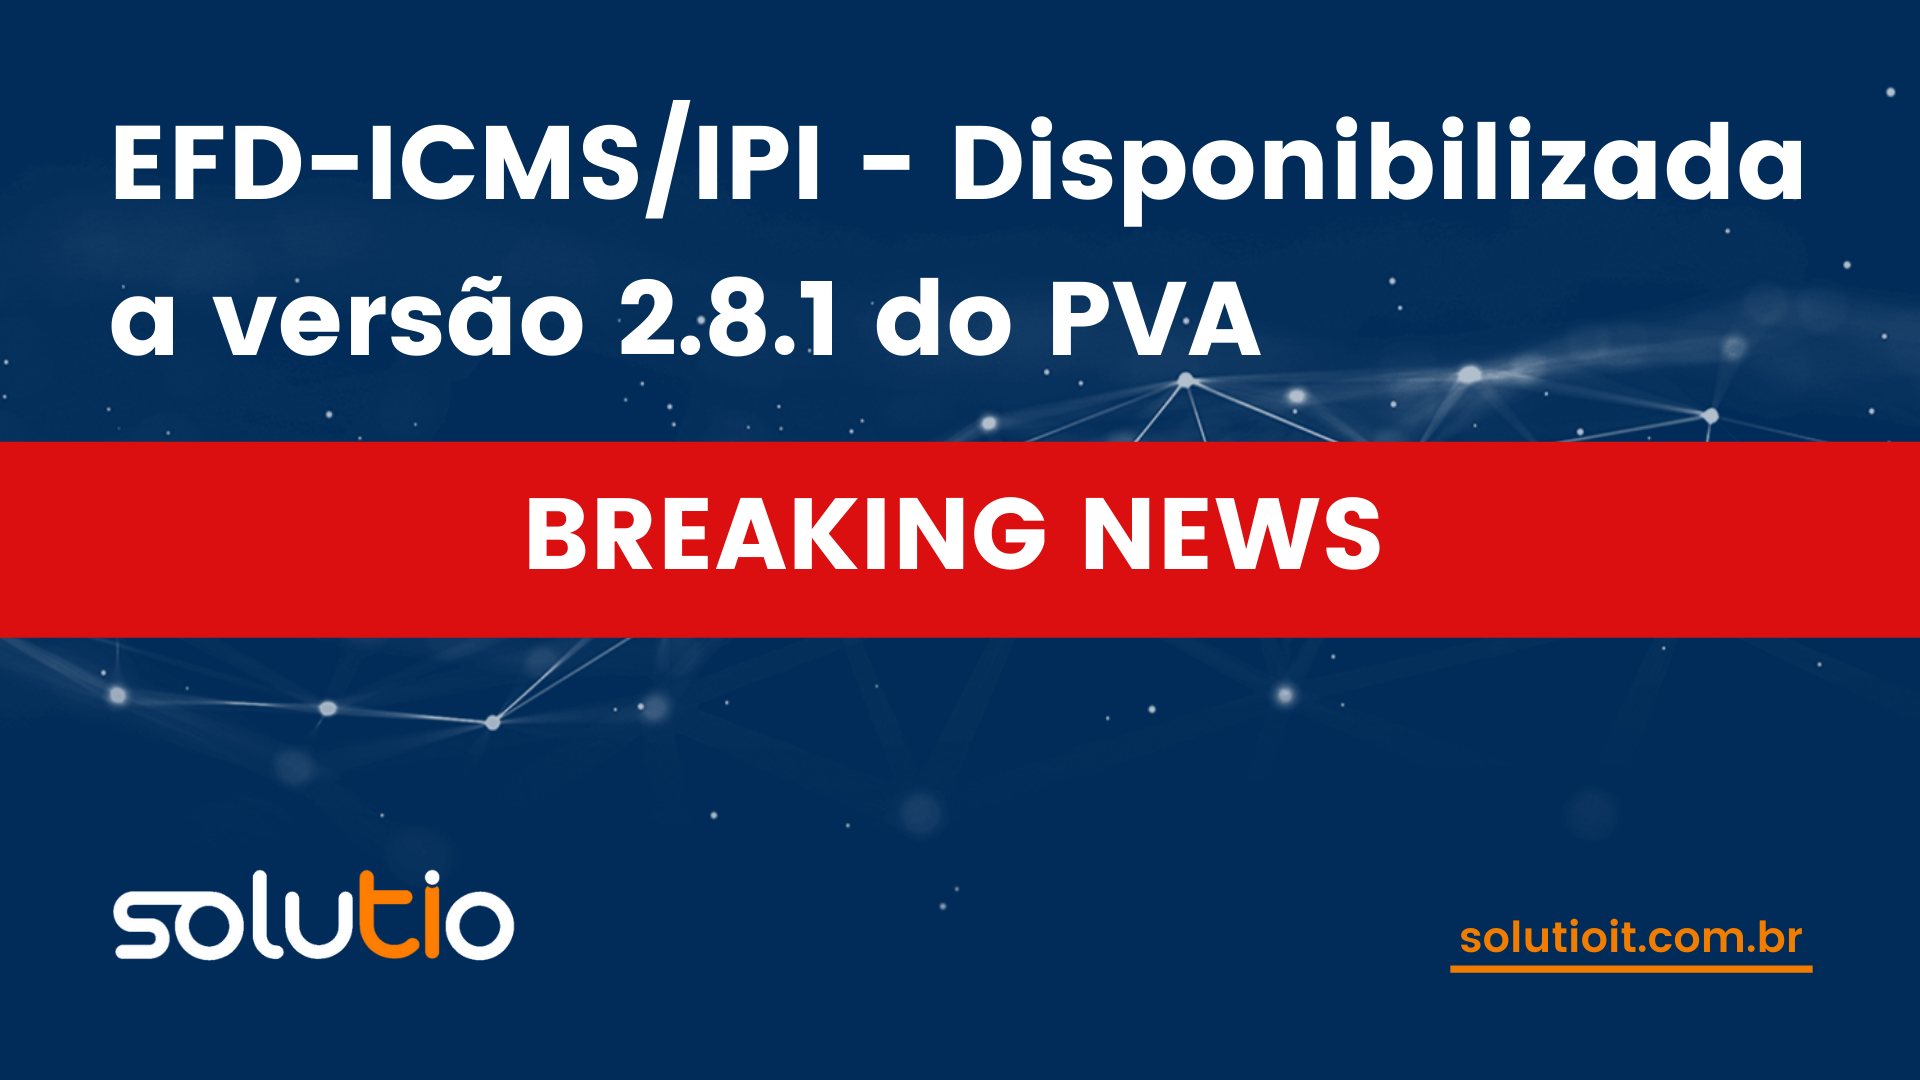 EFD-ICMS/IPI - Disponibilizada a versão 2.8.1 do PVA